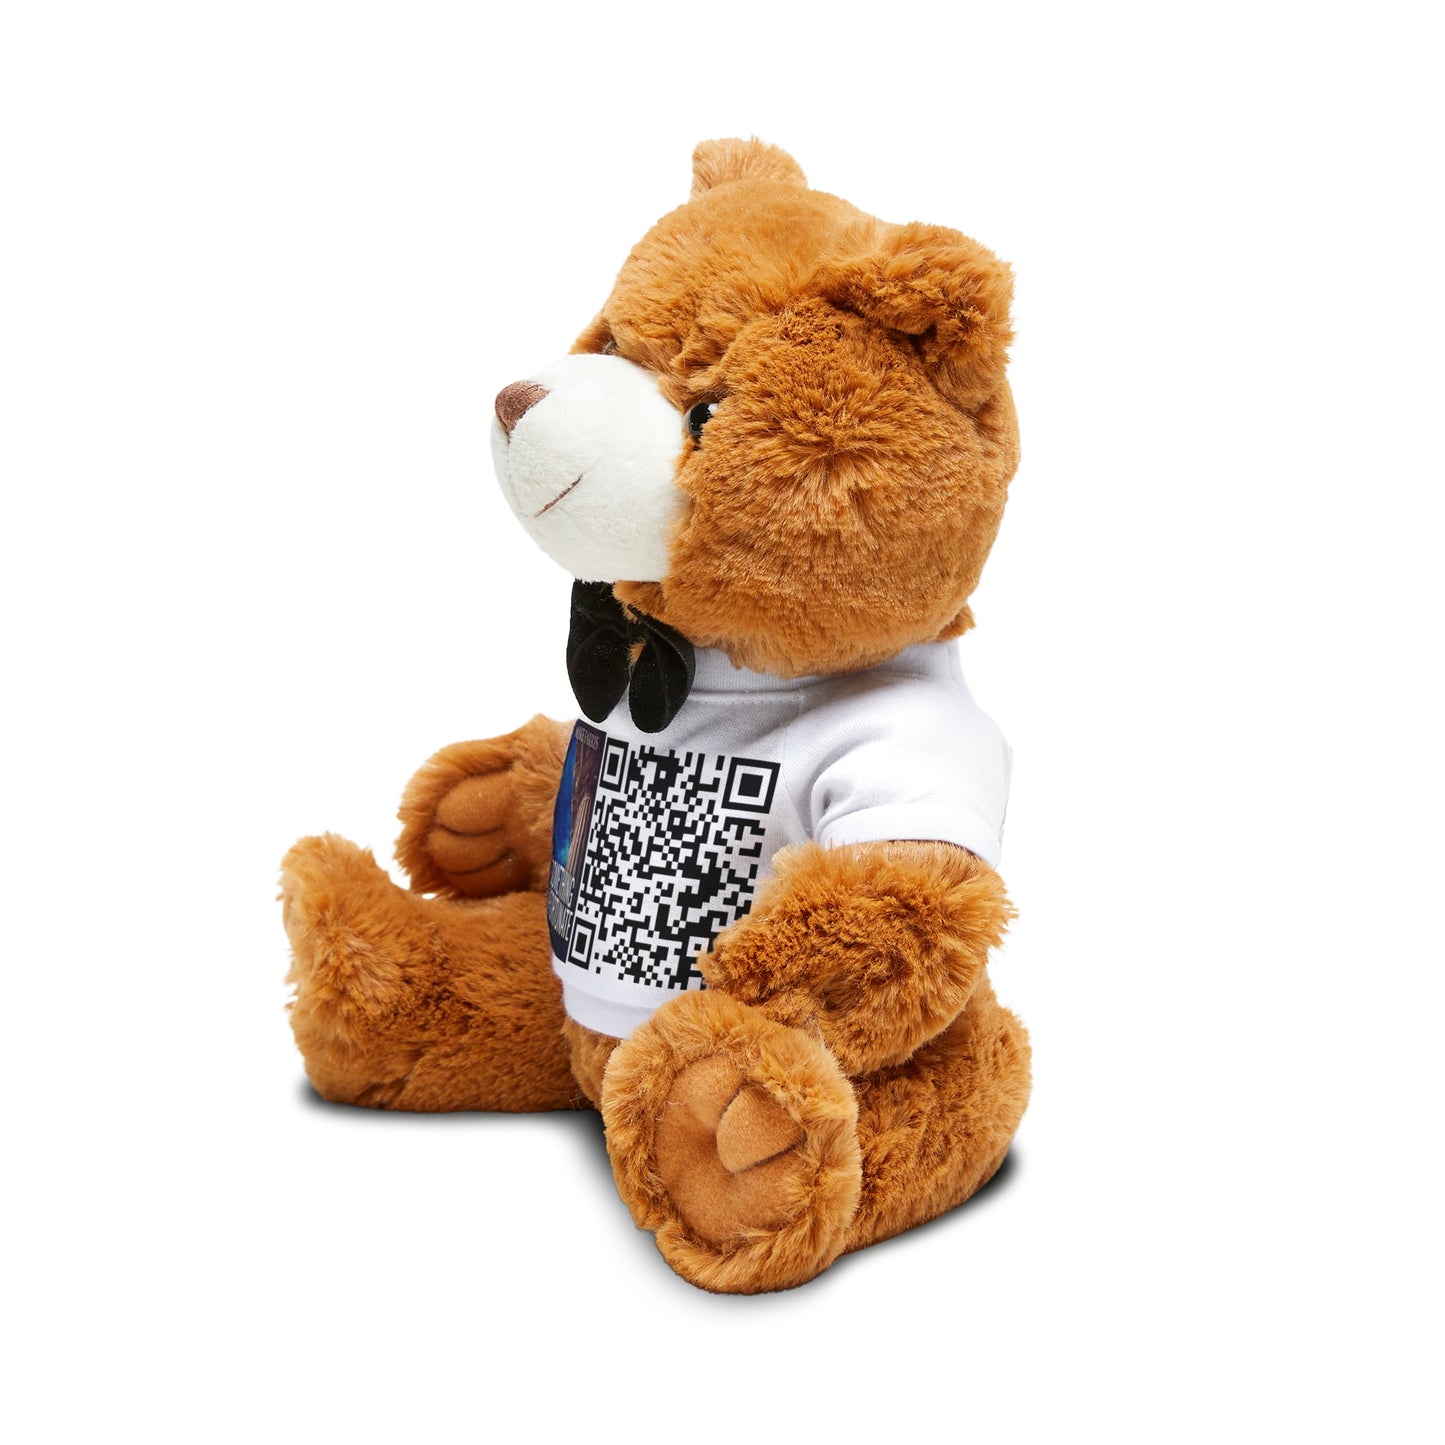 Something Unfortunate - Teddy Bear